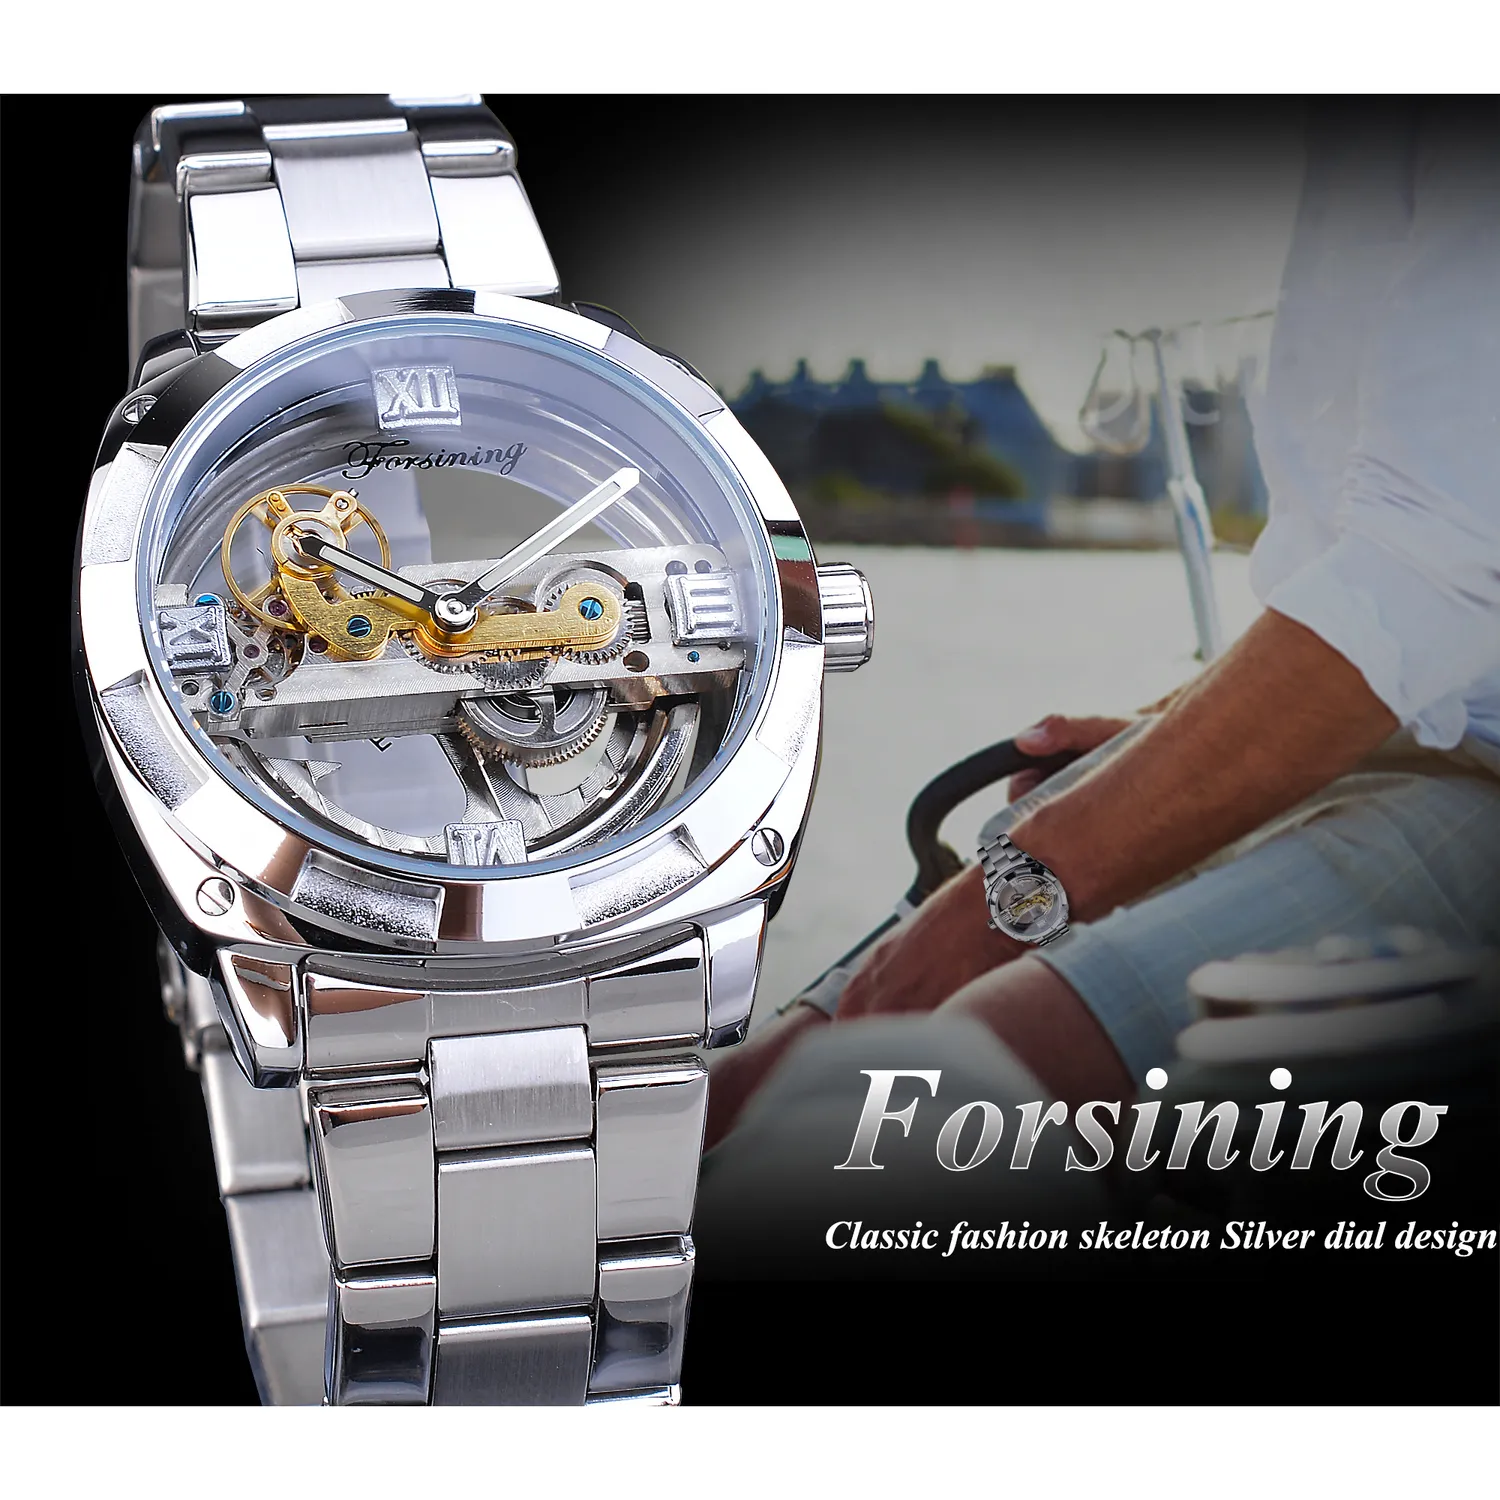 Forsining Hombres Diseño Transparente Reloj Mecánico Automático Plata Cuadrado Engranaje Dorado Esqueleto Cinturones de Acero Inoxidable Reloj Saati Y237j